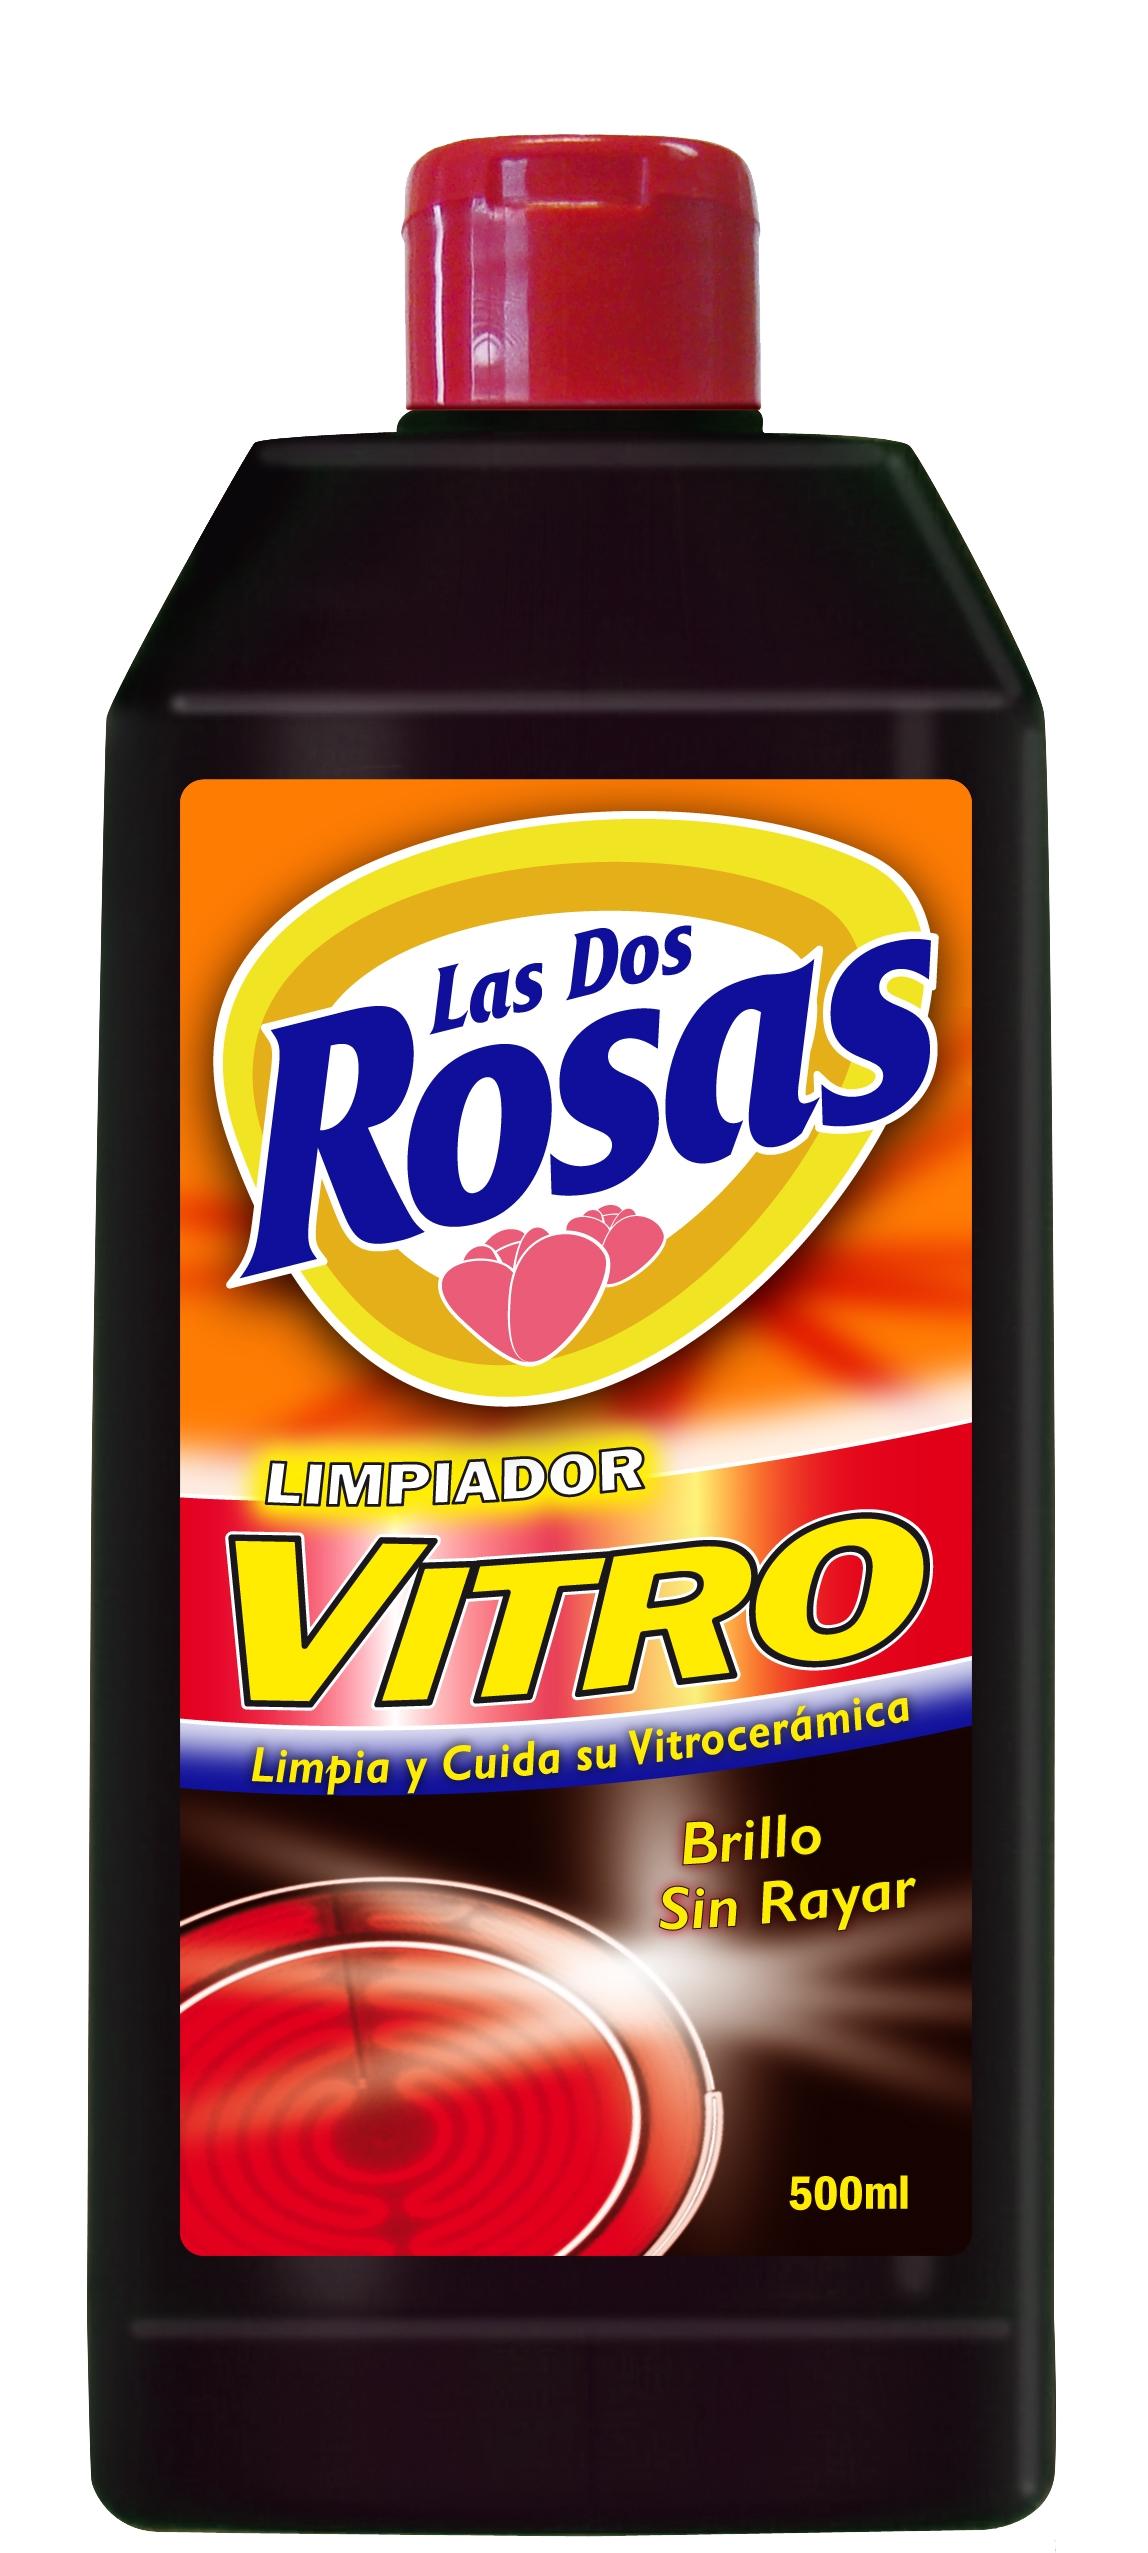 Las 2 Rosas vitro 500ml